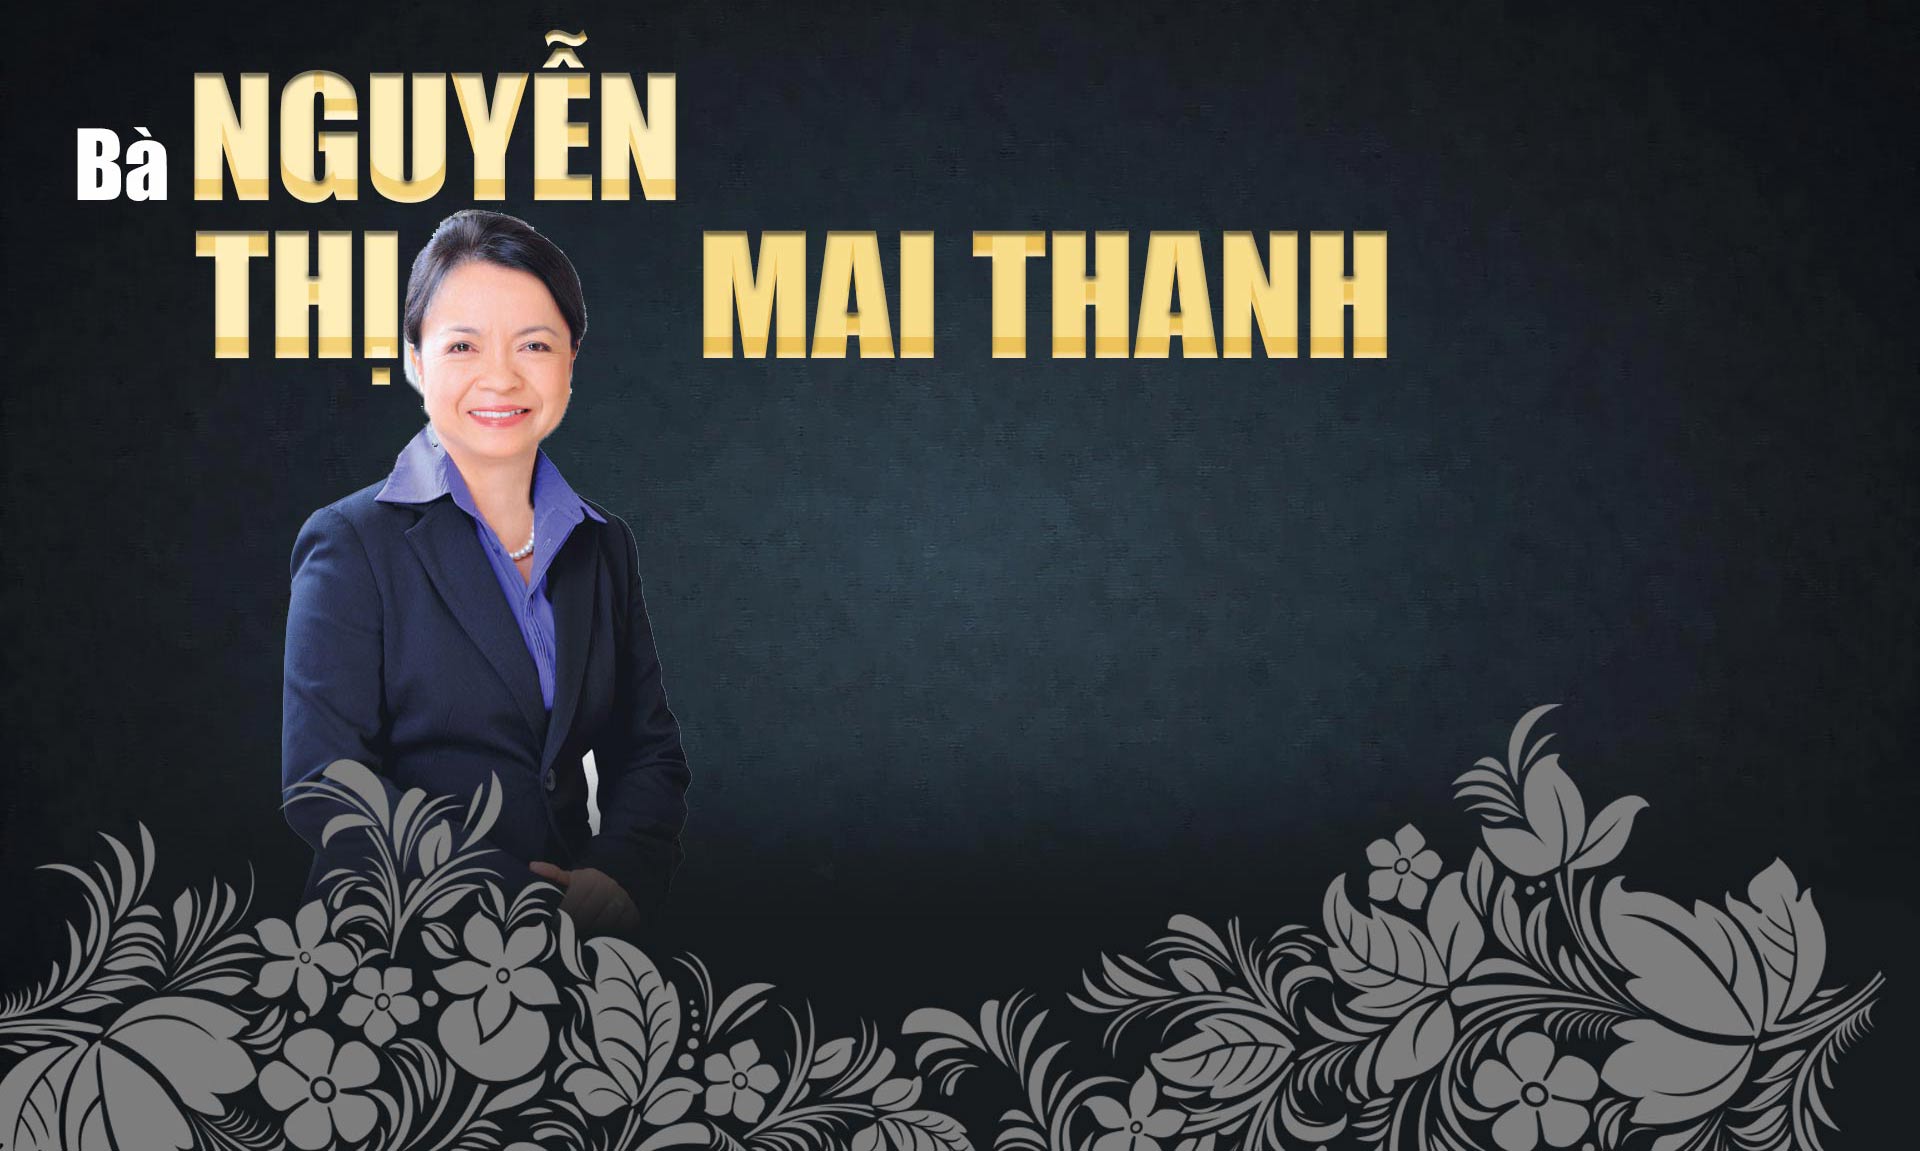 10 phụ nữ Việt gây choáng bởi sự giàu có, giỏi giang và quyền lực - 28